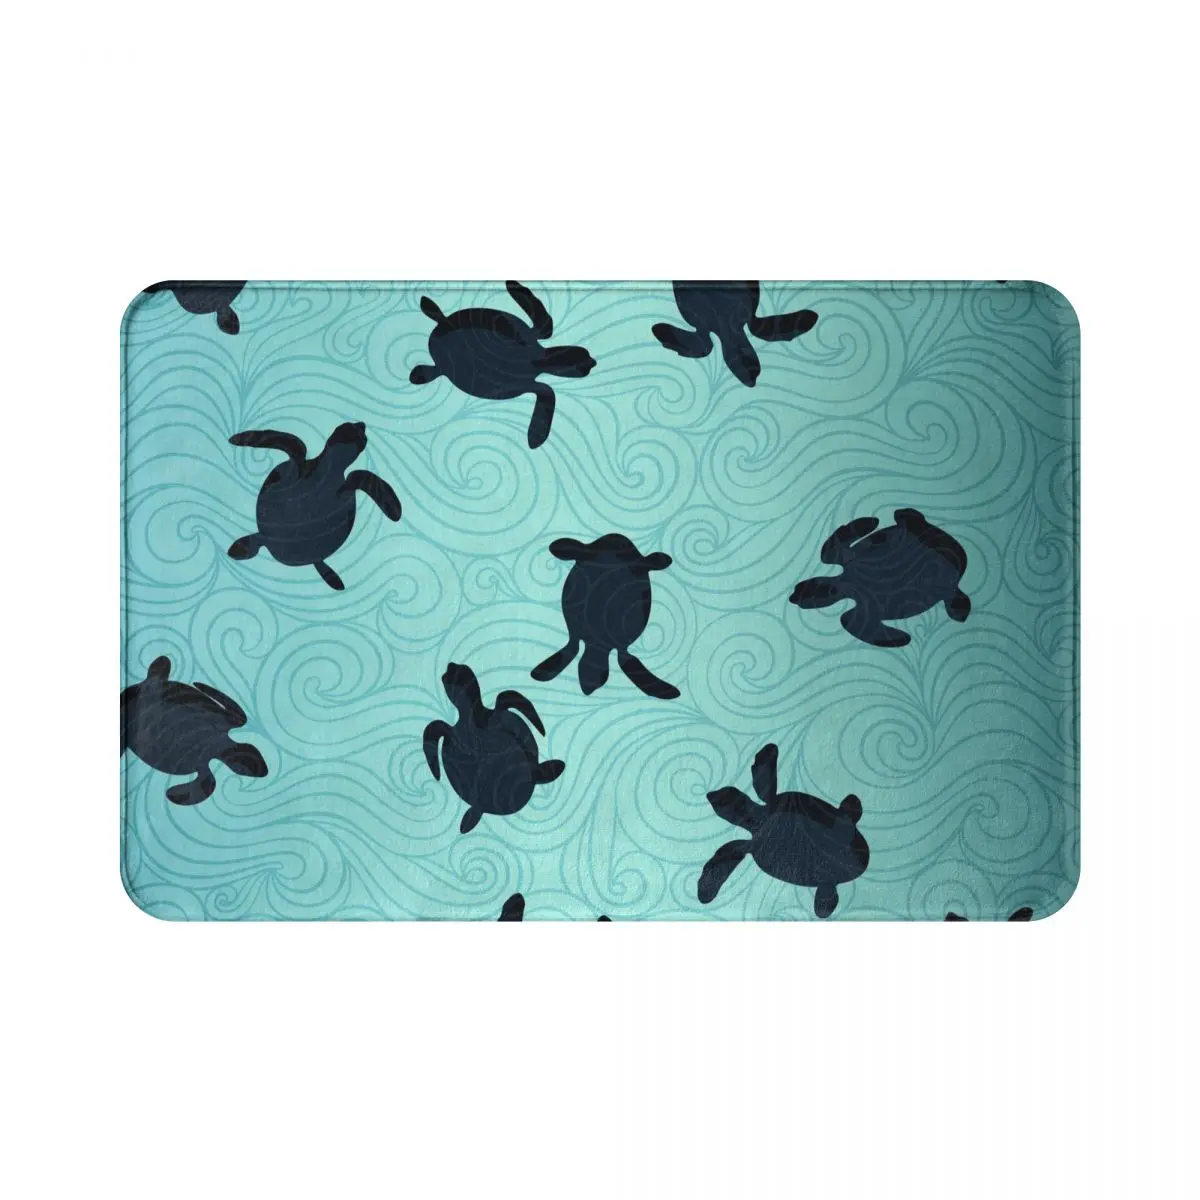 

Floor Mat Ocean Life Banner With Sea Turtle Unique Entrance Door Mat Living Room Kitchen Non-Slip Carpet Bathroom Doormat